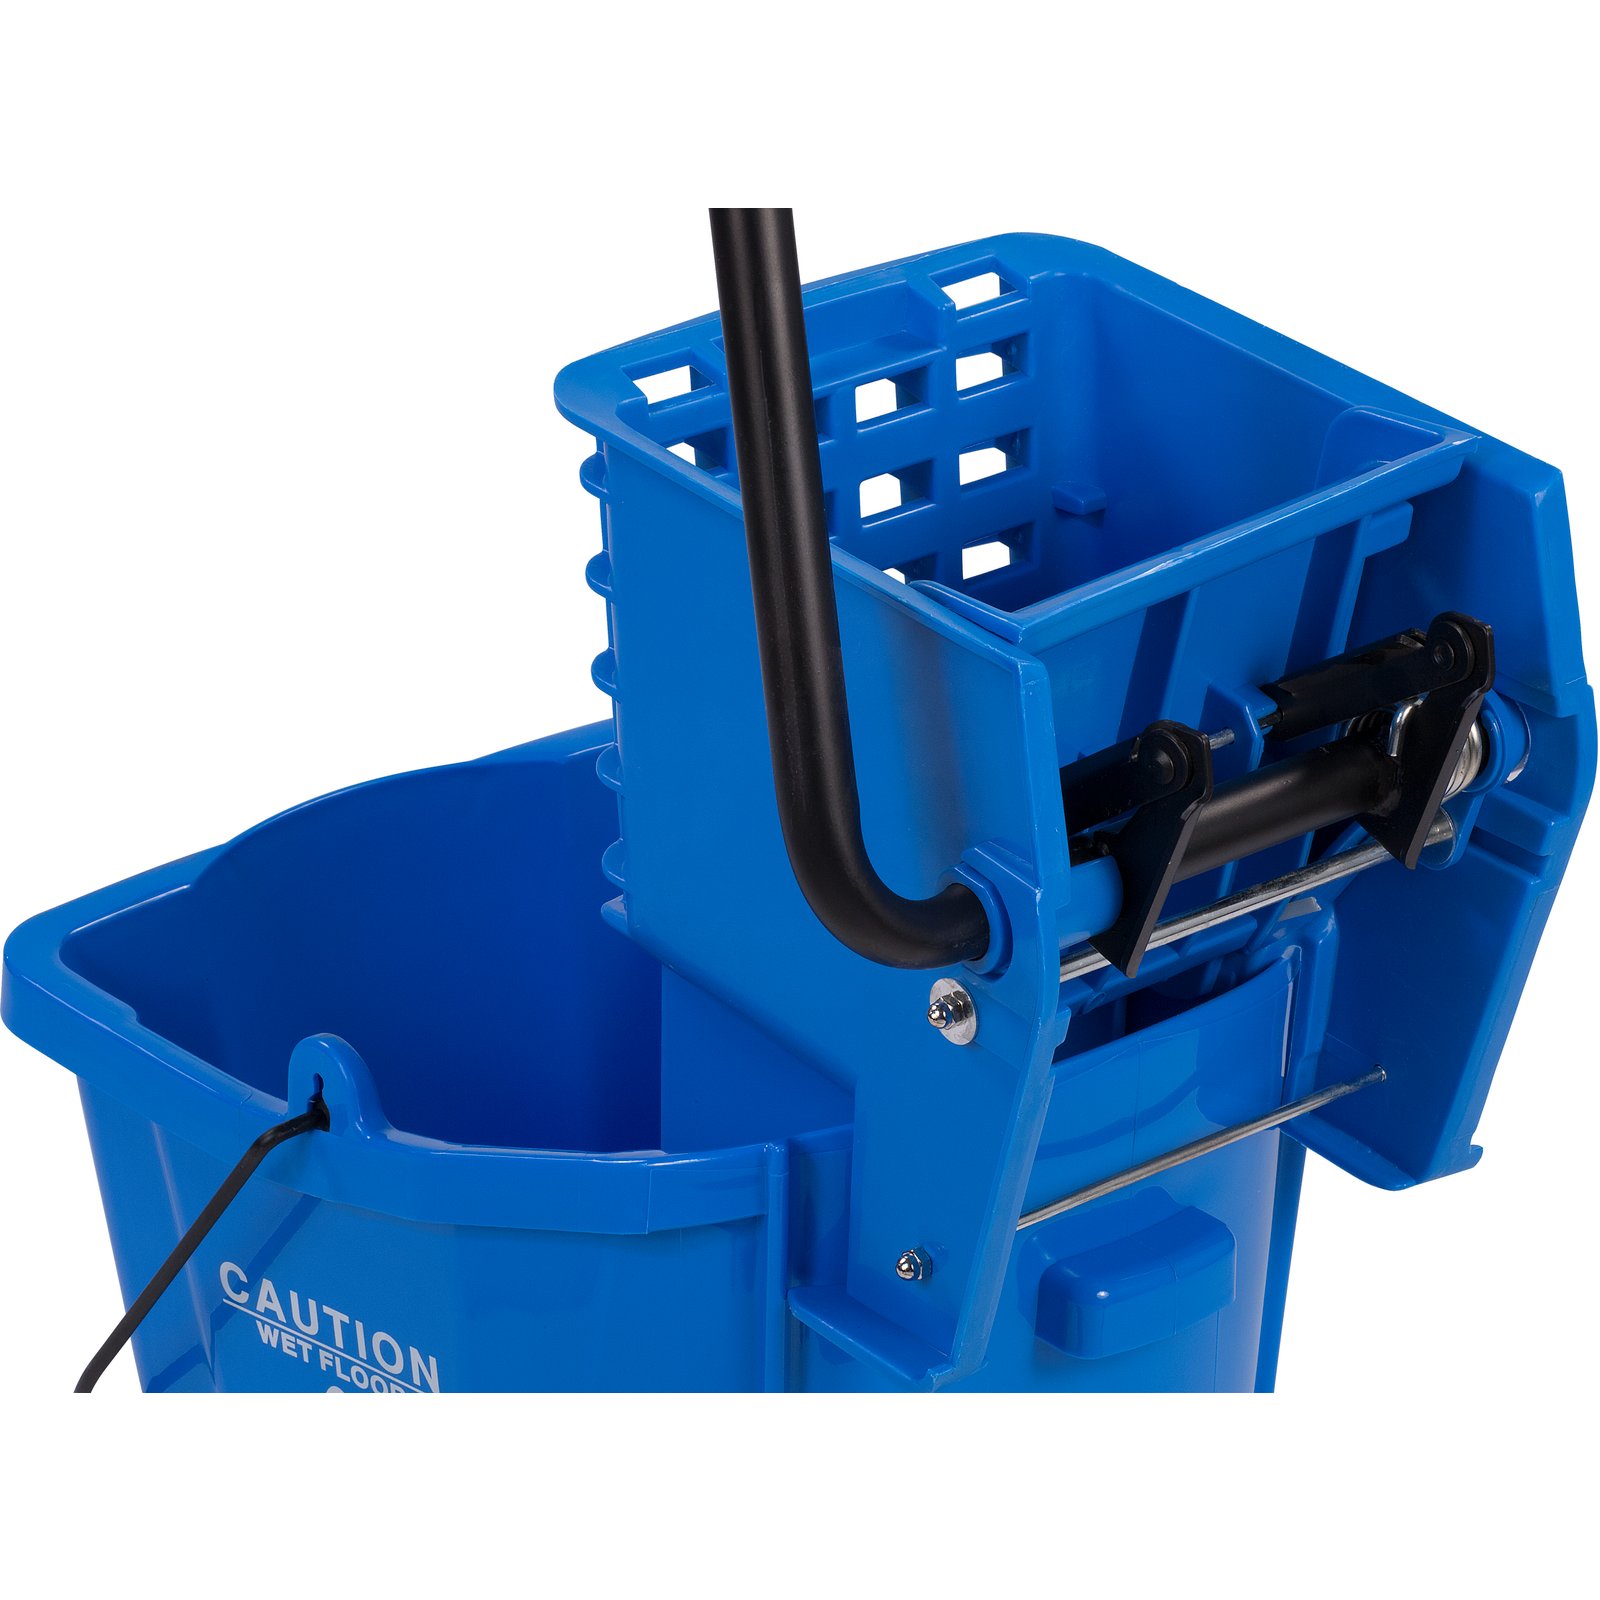 AllPoints 1591099 Bucket Mop Blue W/ylw Wringr